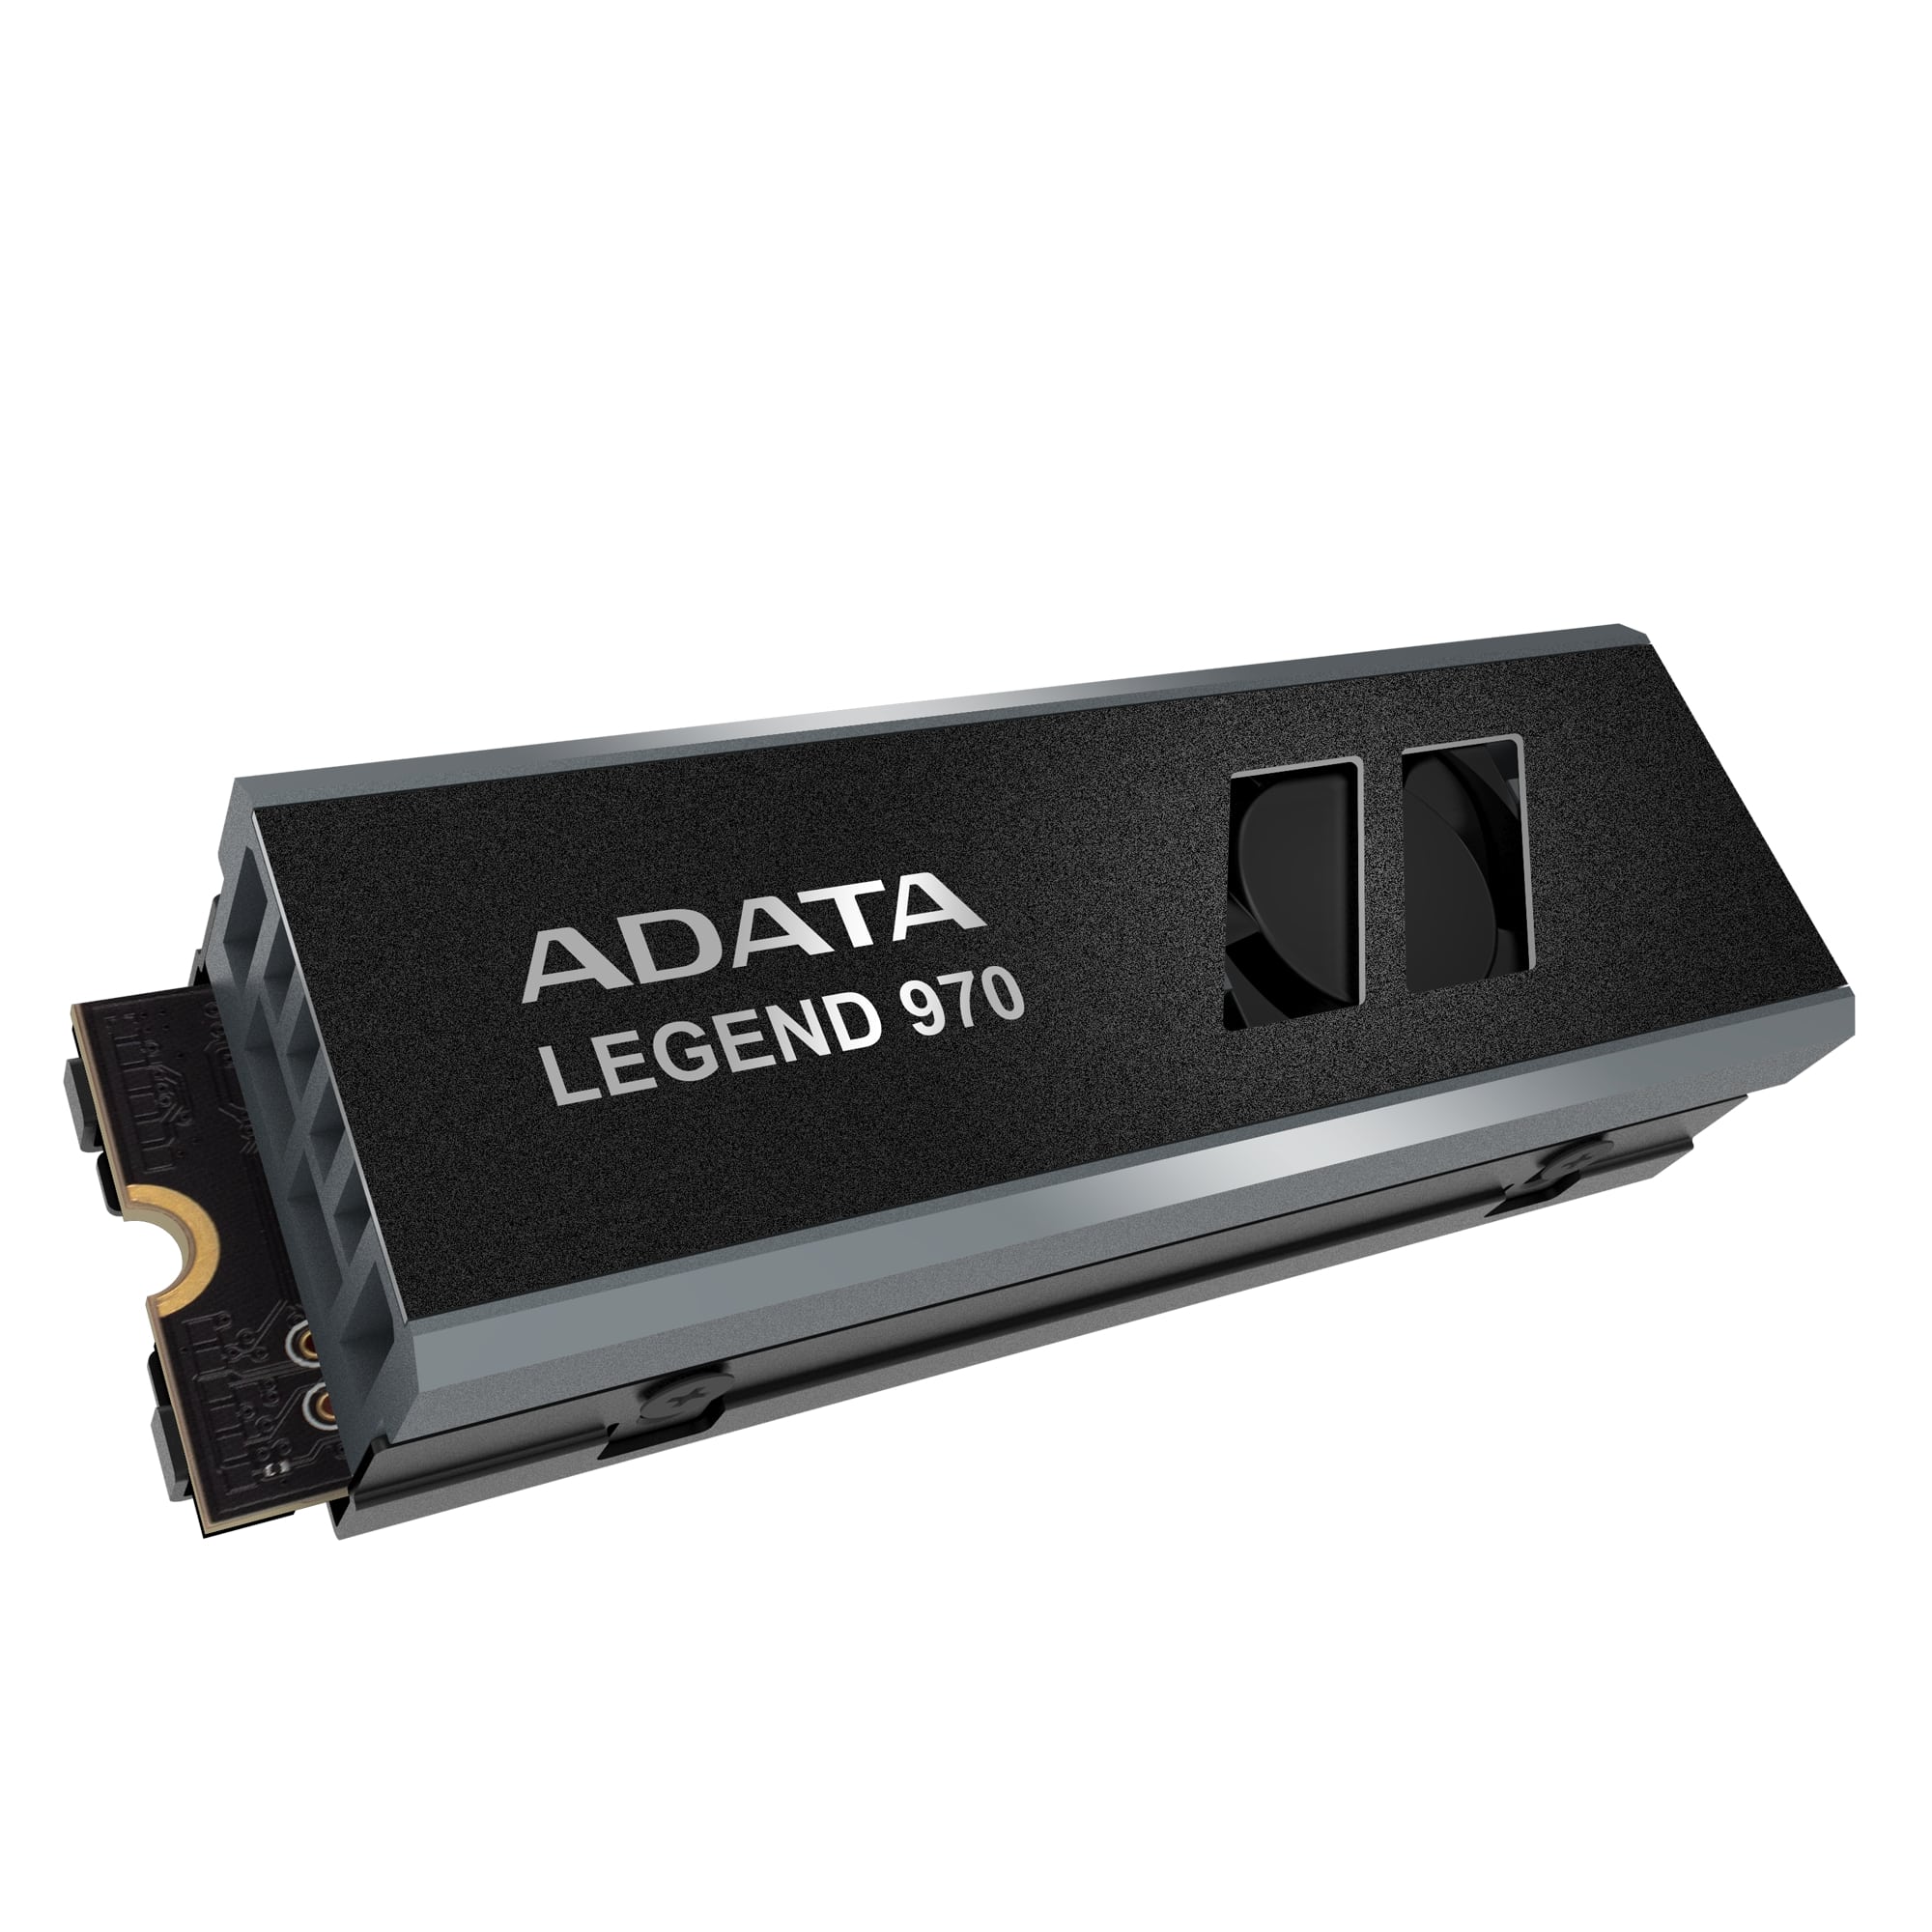 ADATA LEGEND 970/ 2TB/ SSD/ M.2 NVMe/ Čierna/ 5R 